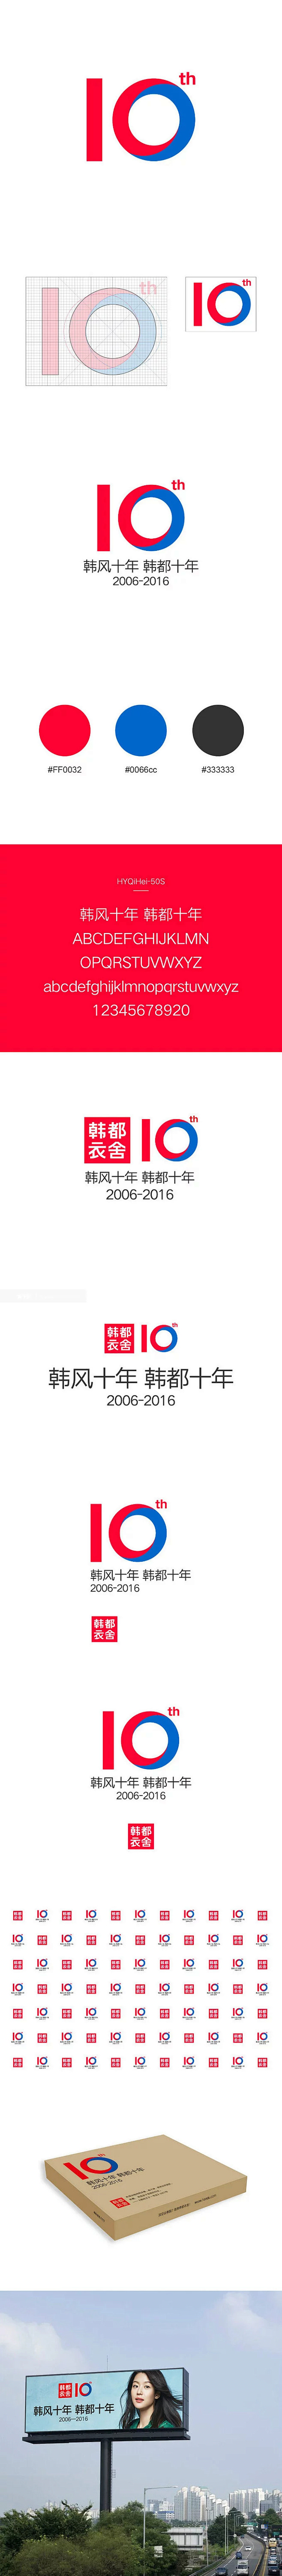 韩都衣舍十周年logo设计与使用规范 -...